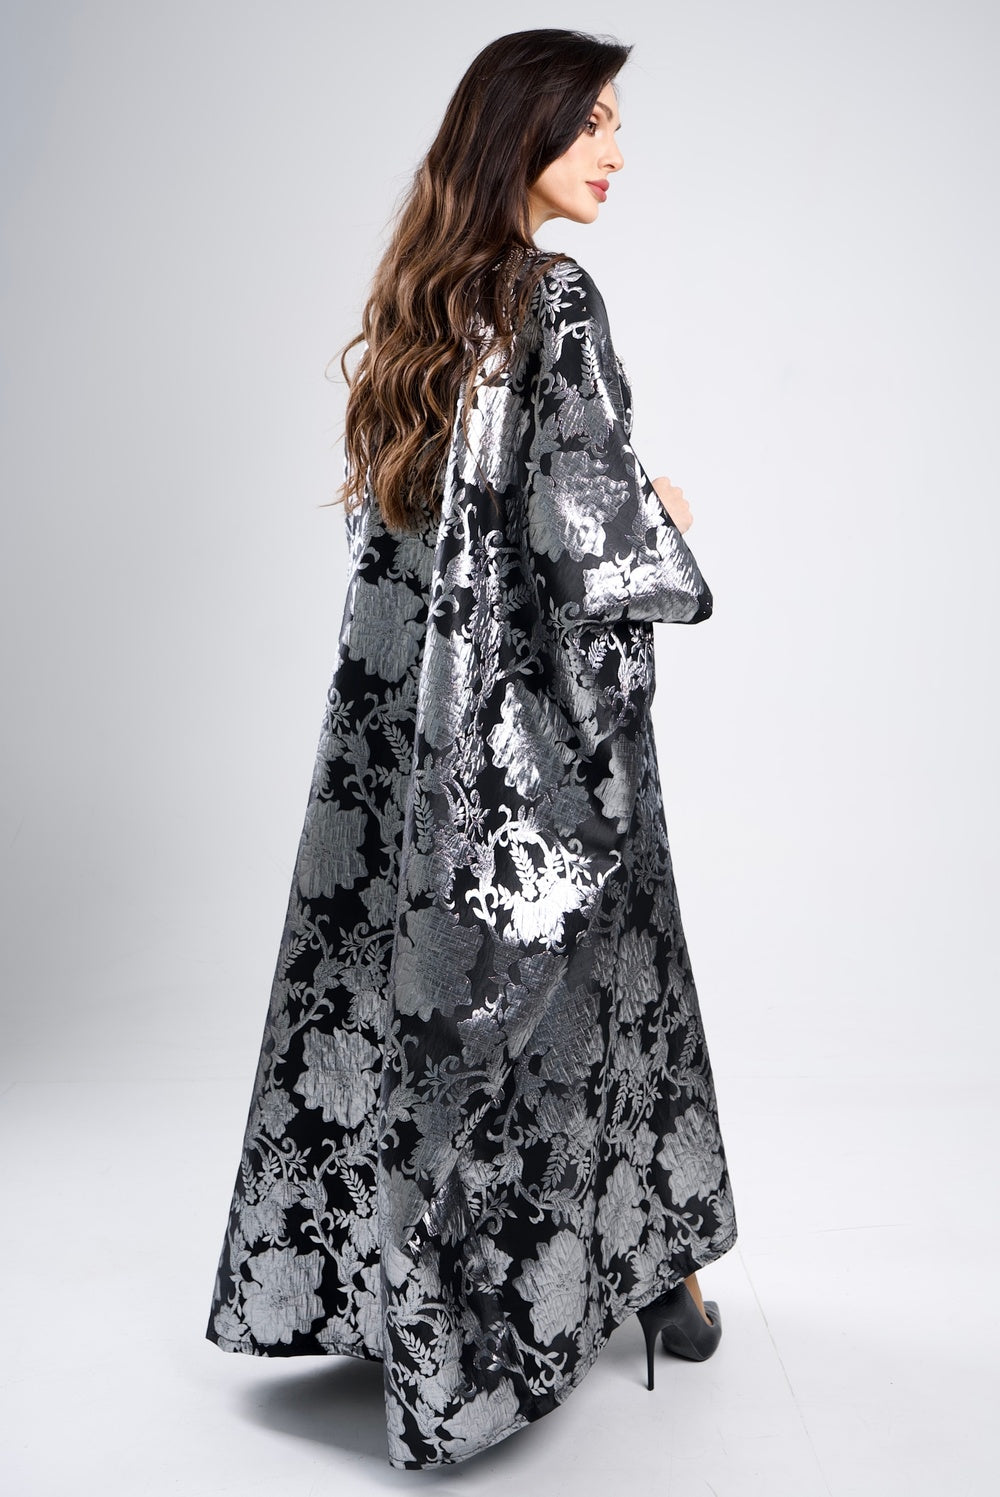 Crystal-Adorned Dress